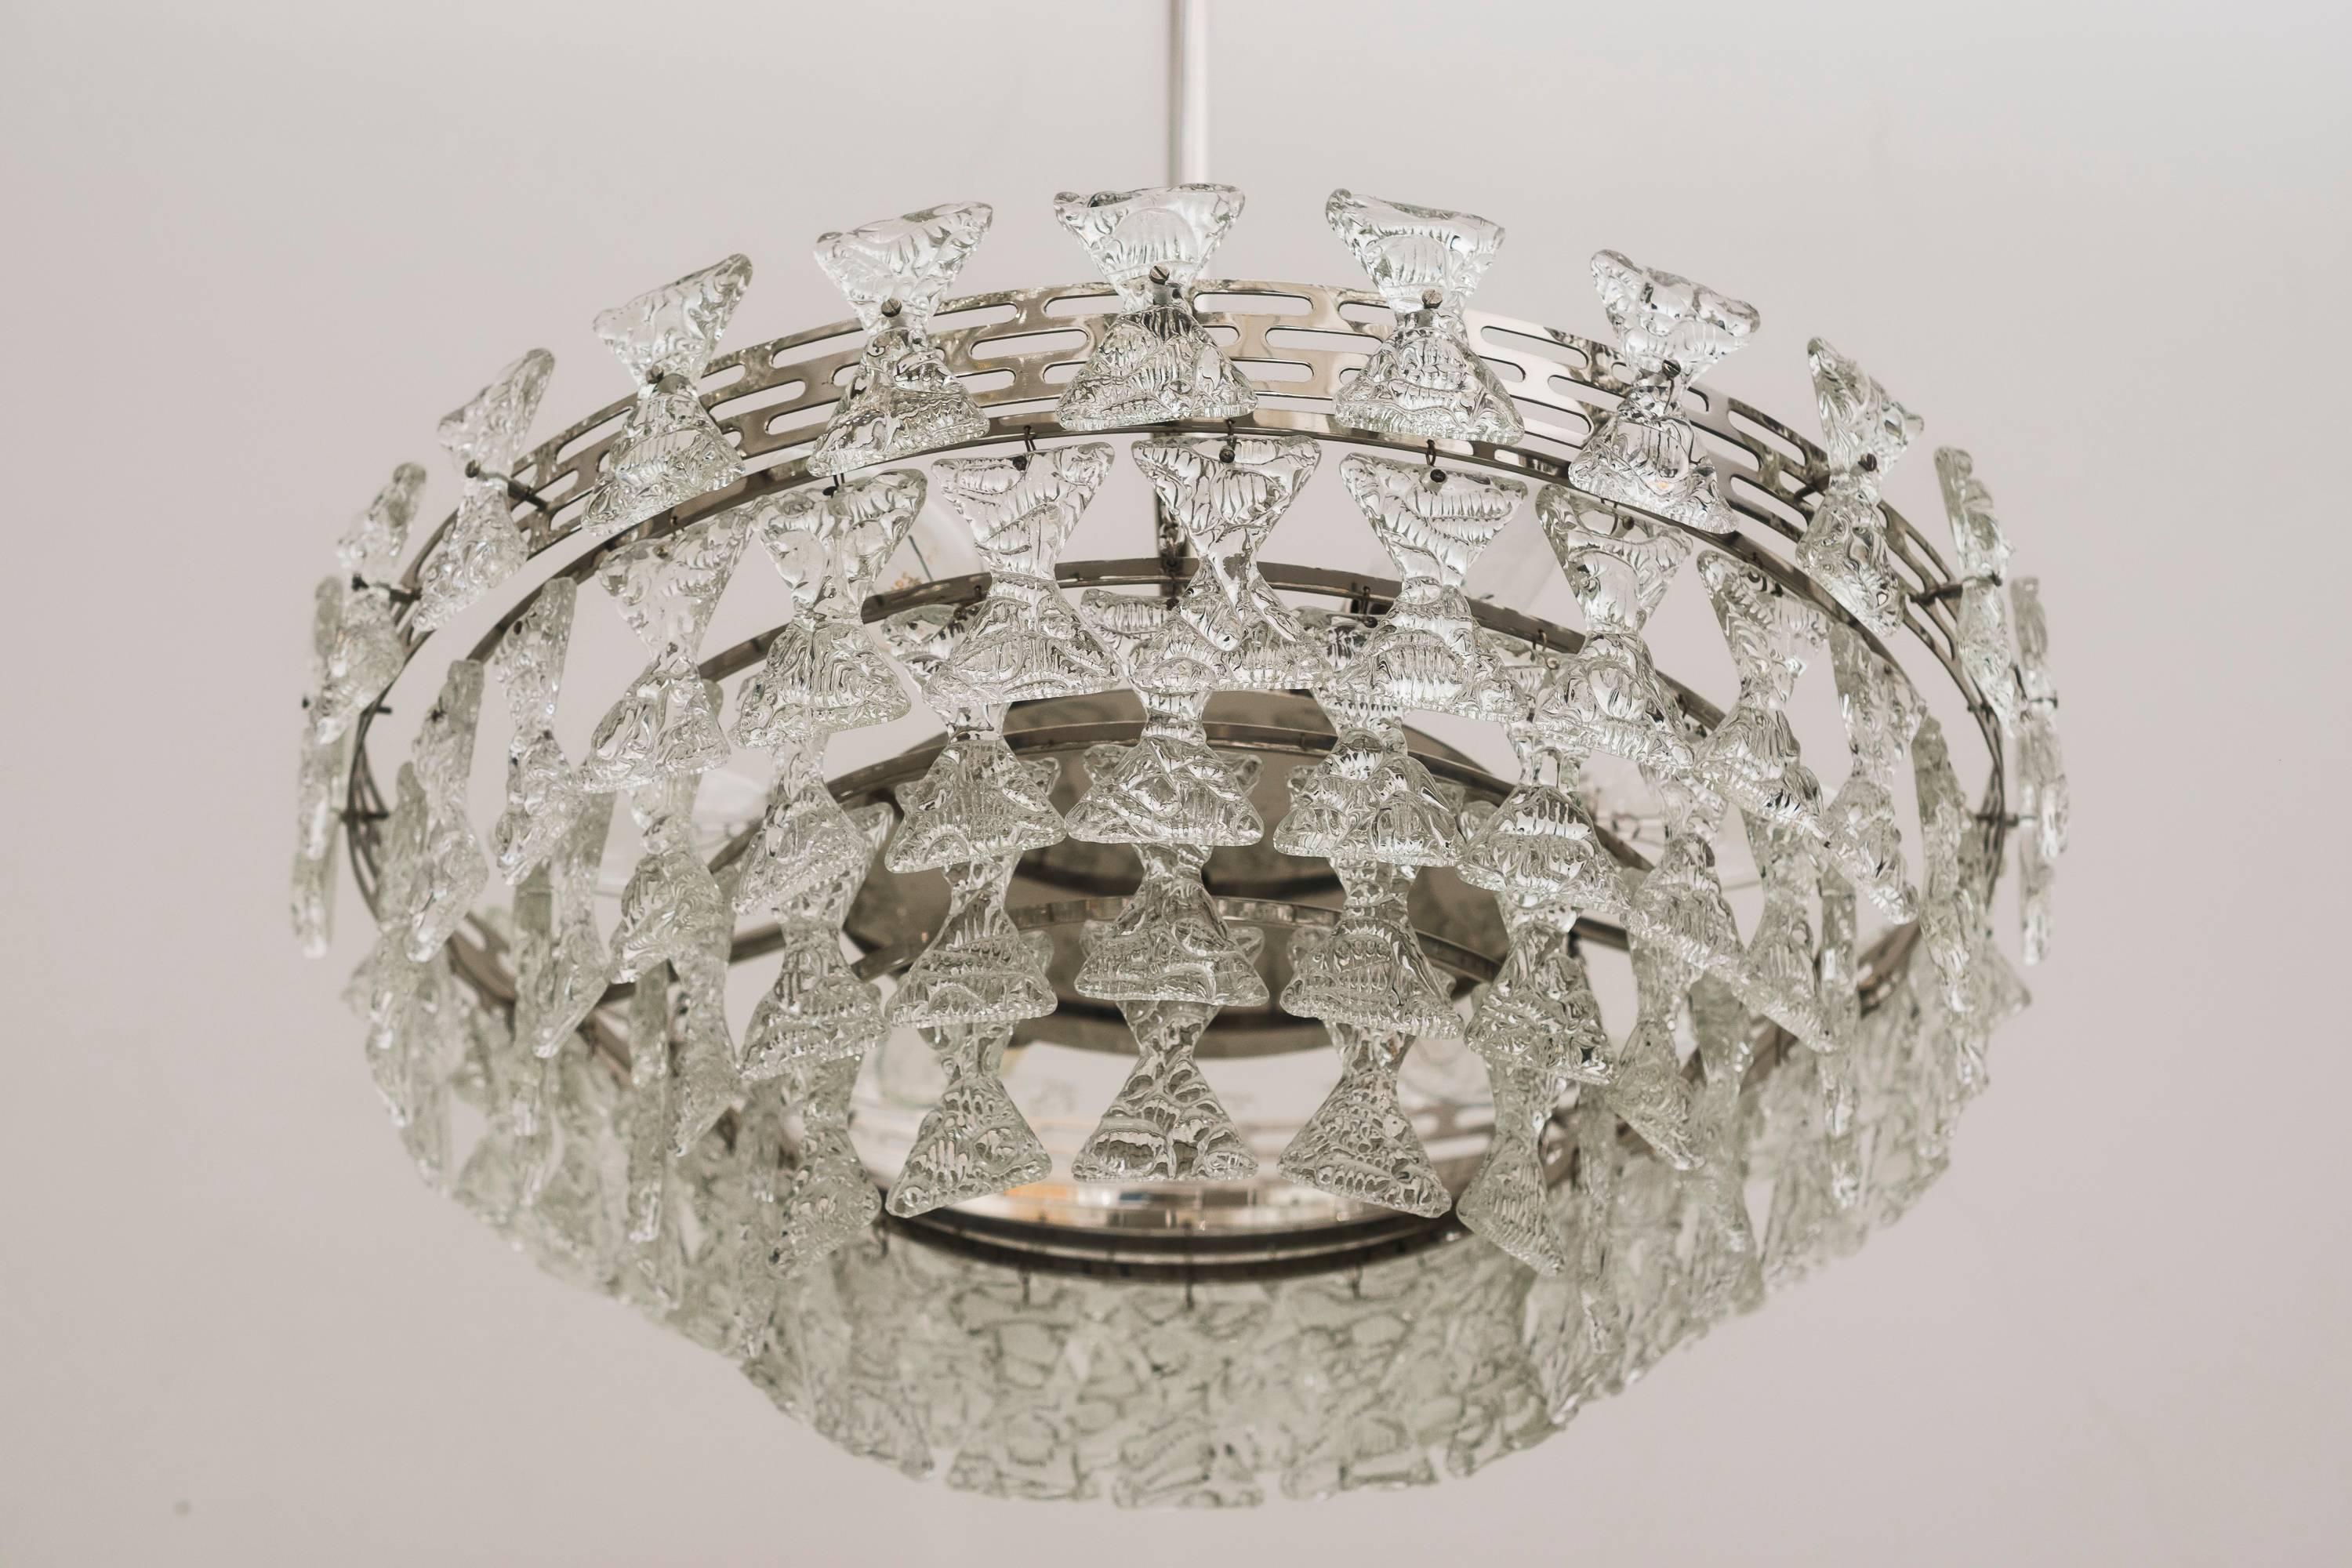 Seltener Kalmar-Kronleuchter mit strukturiertem Glas, ca. 1960er Jahre
Originalzustand
Sechs Glühbirnen.